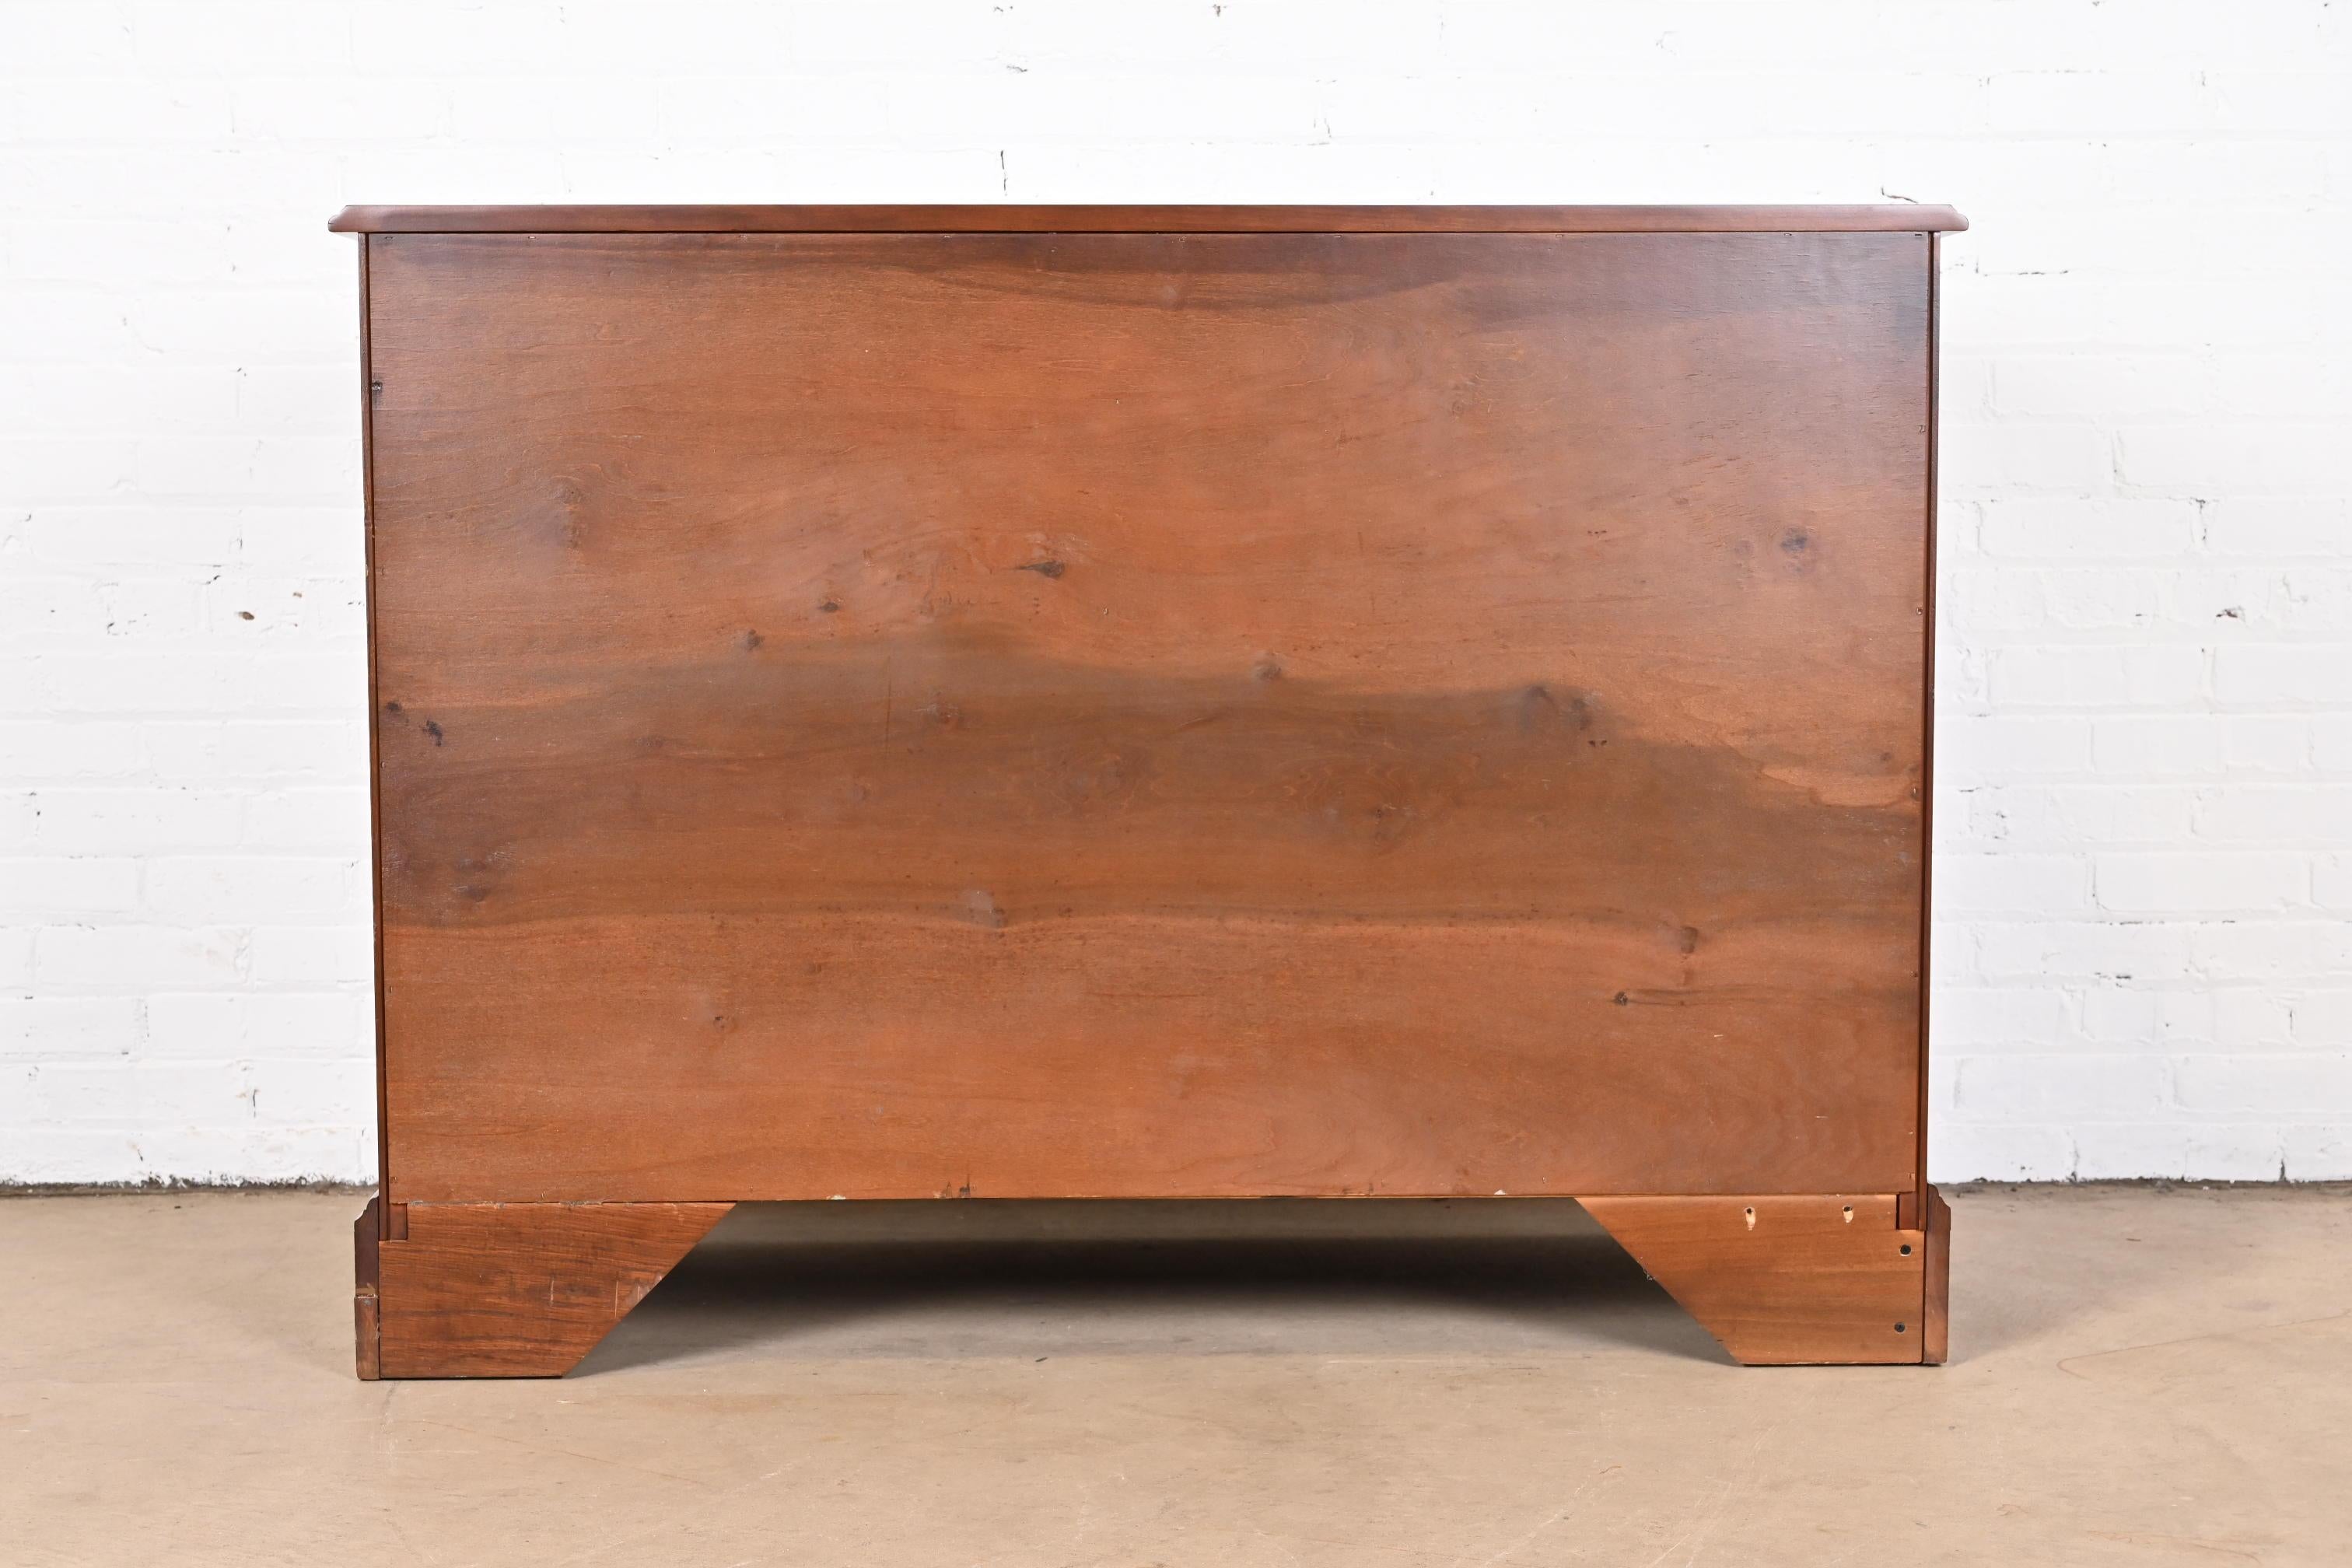 Henkel Harris American Colonial Cherry Wood Sideboard or Bar Cabinet, Restored 10